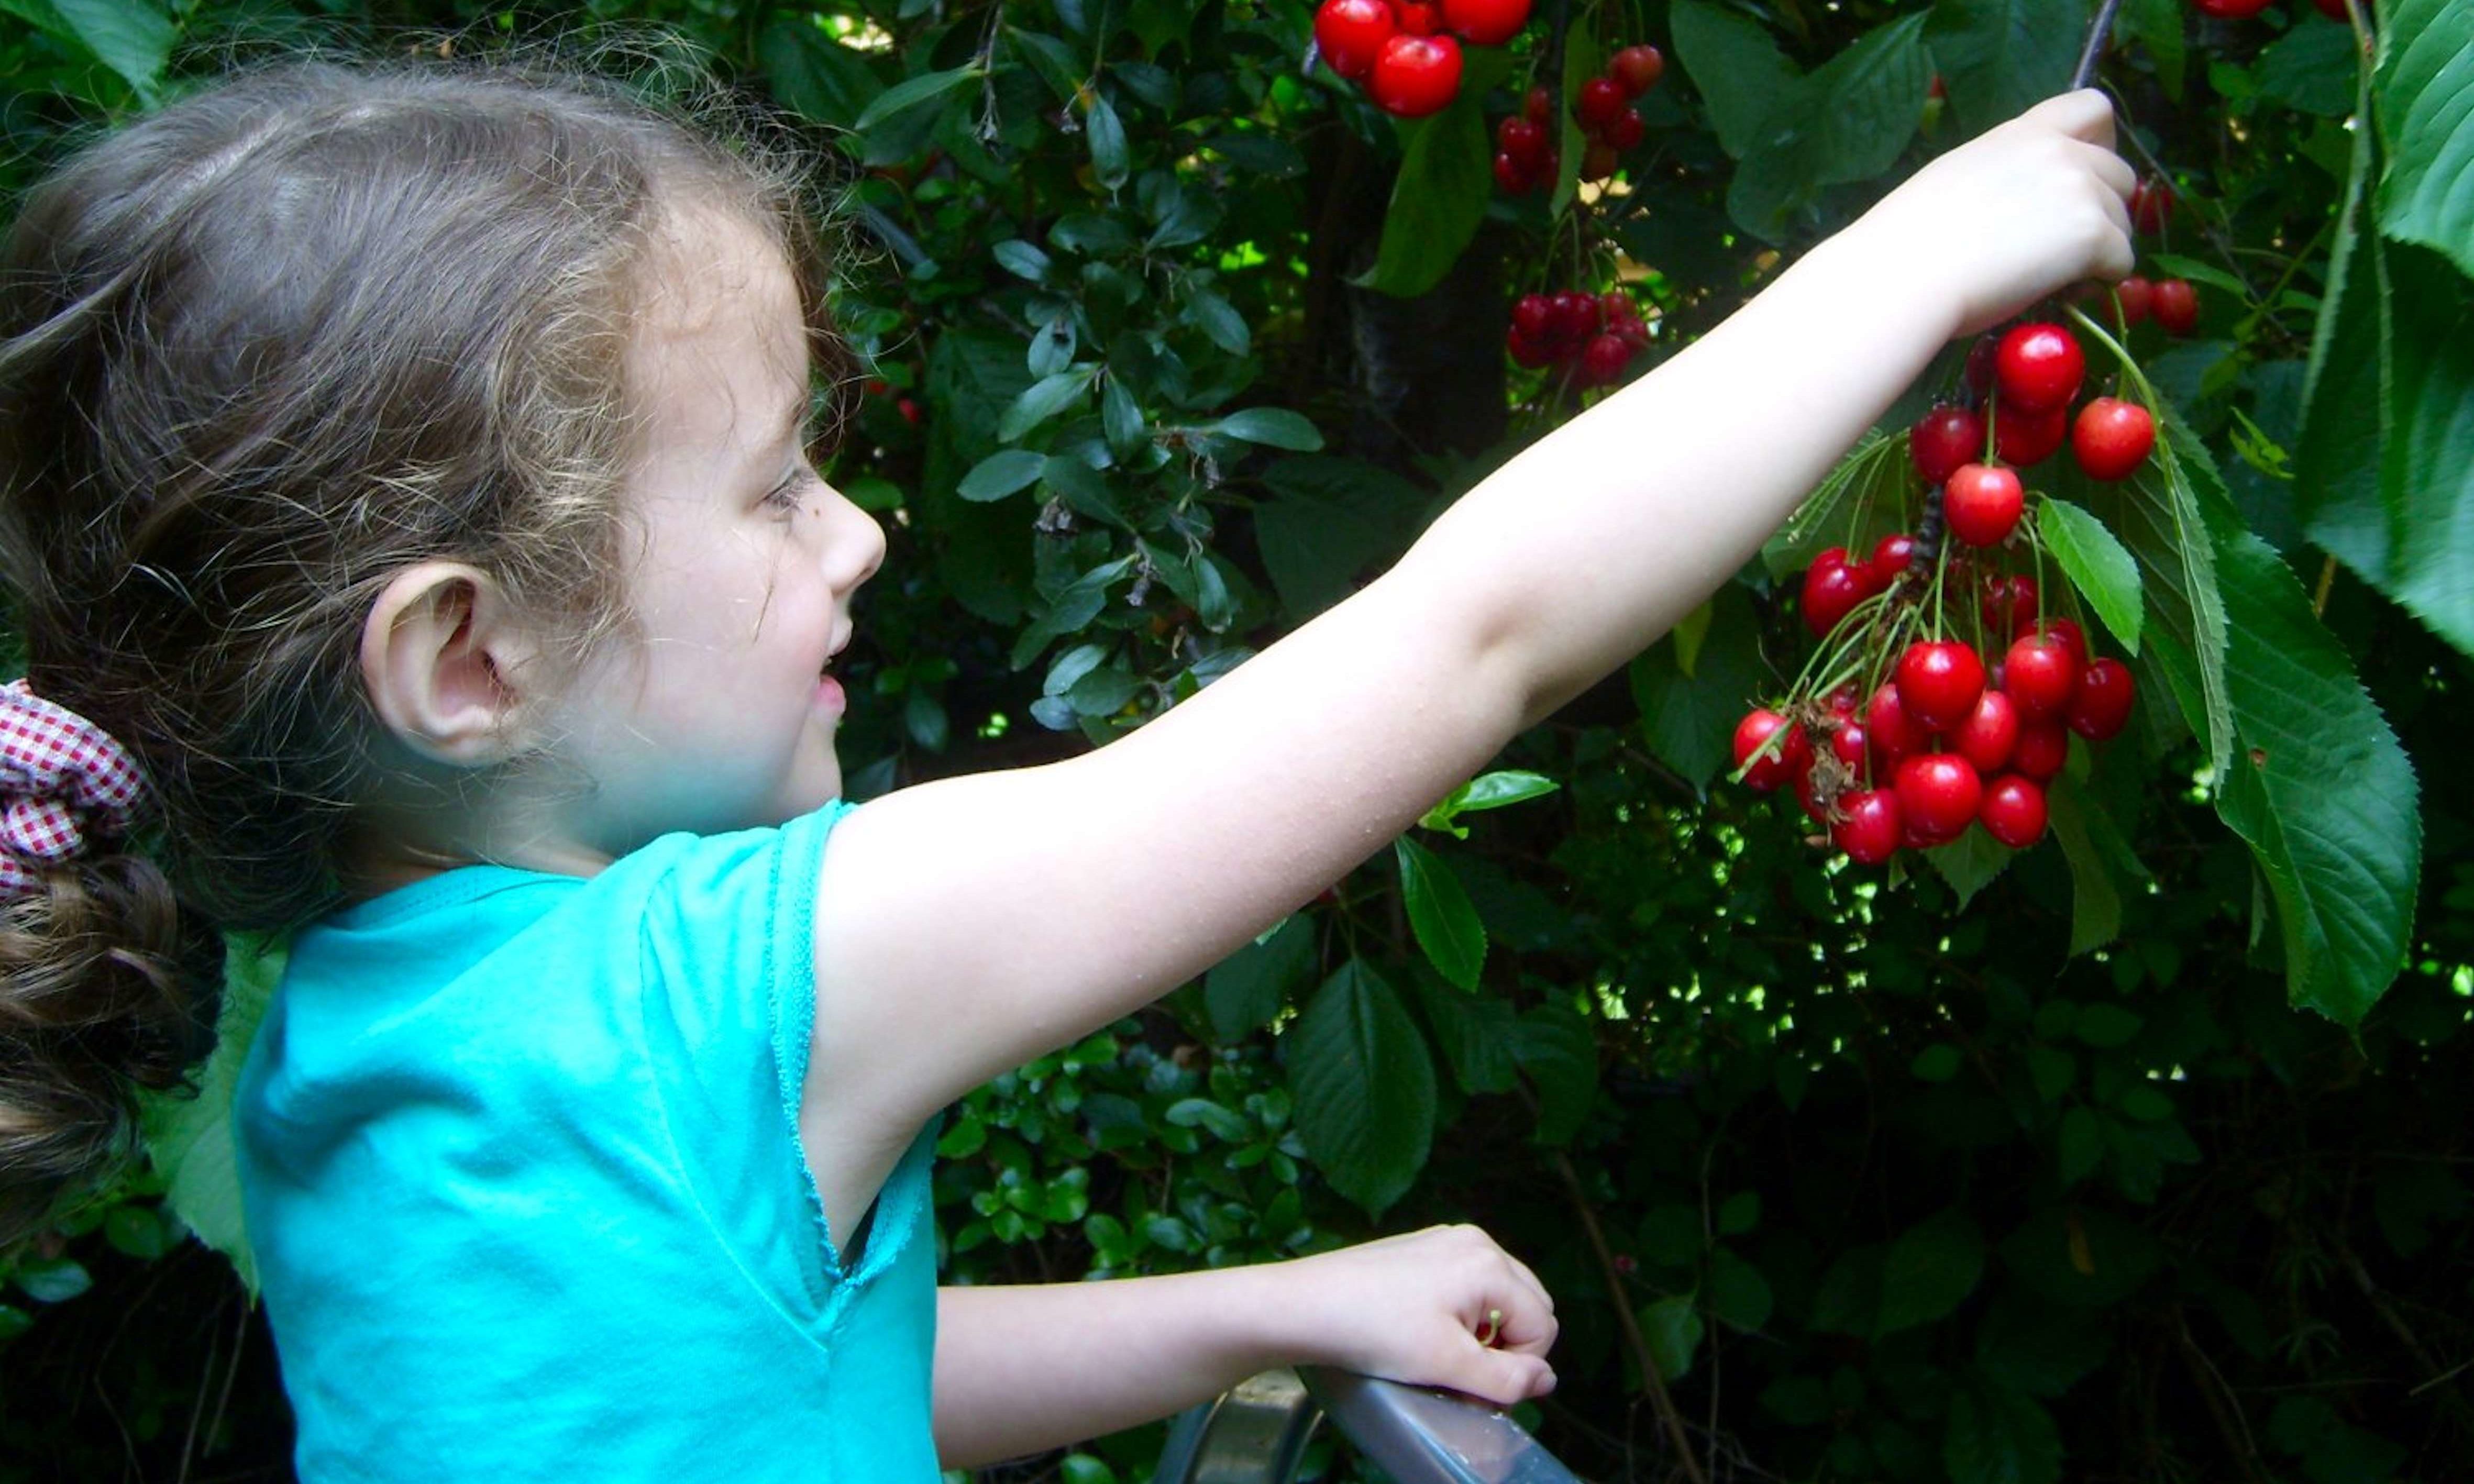 Sophie picking cherries